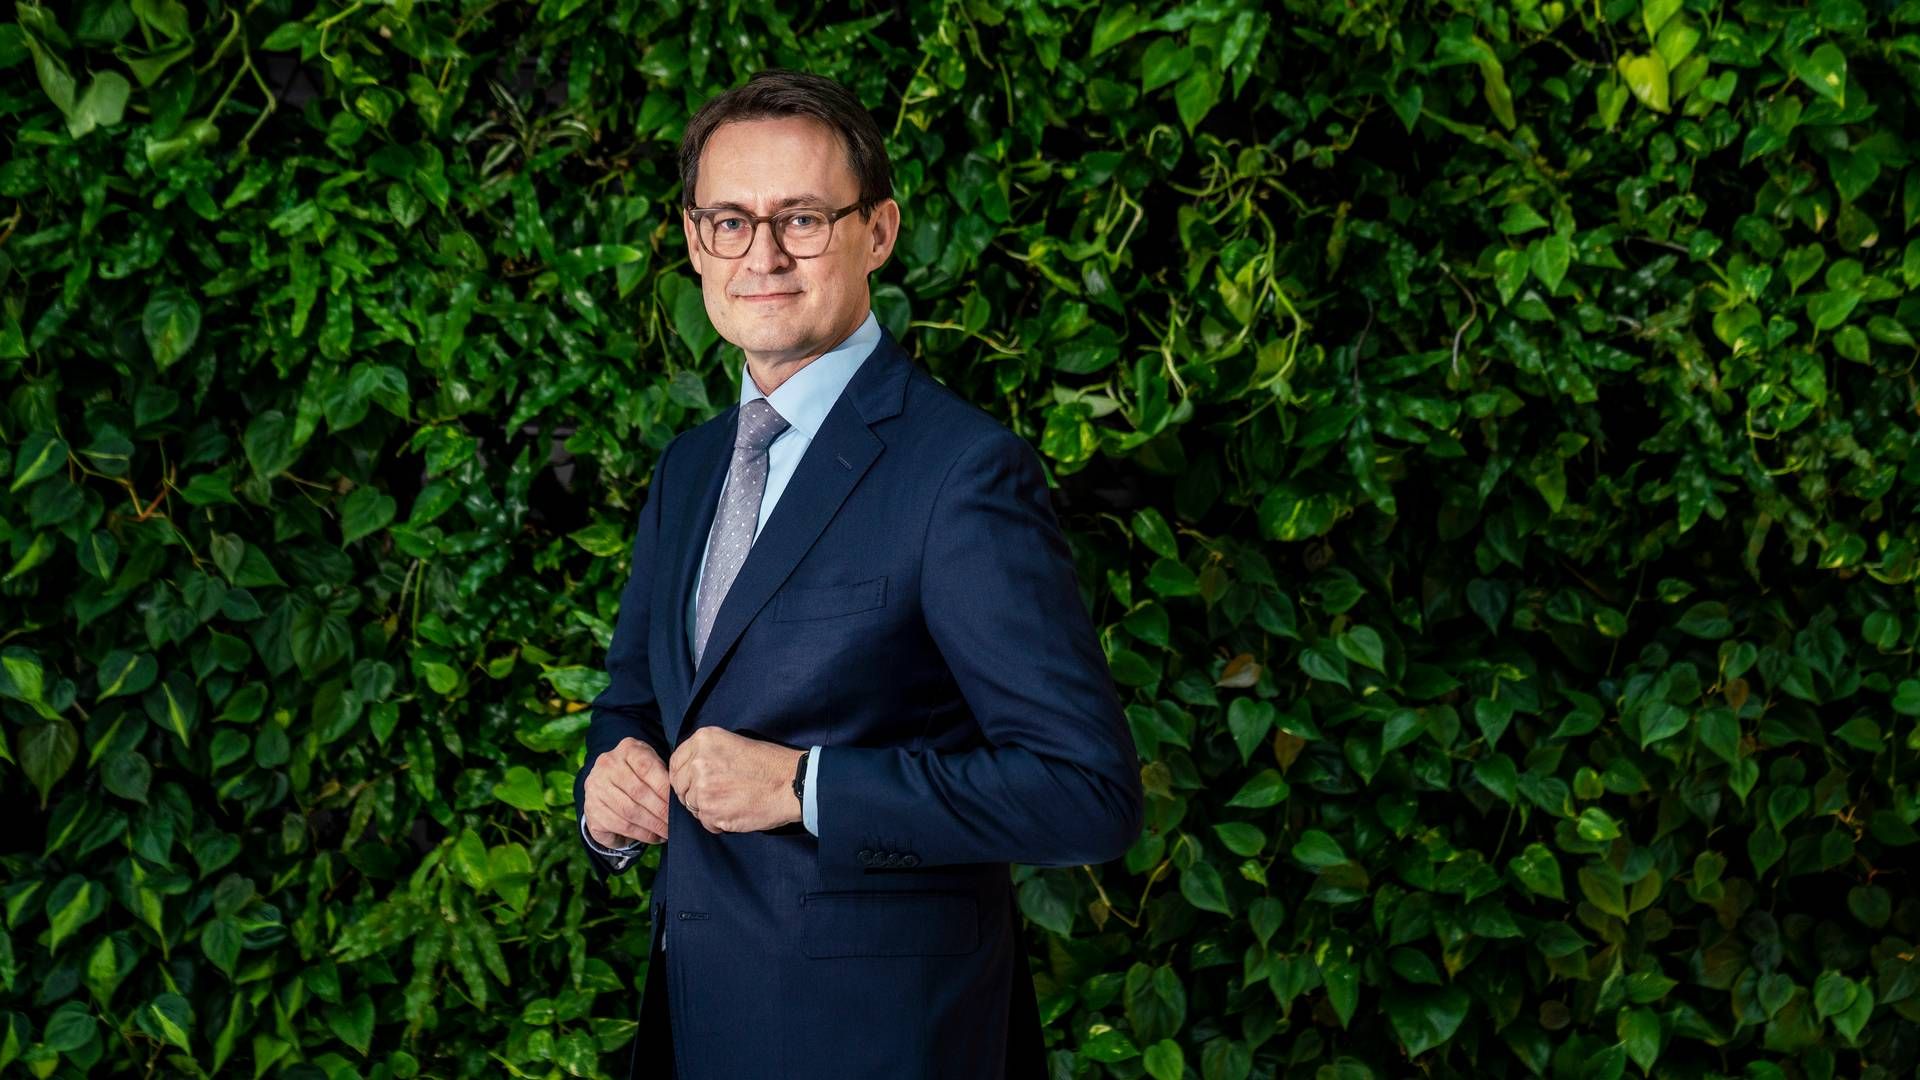 Kristian Villumsen er som adm. direktør i Coloplast i stigende grad sat i flere forskellige værdipolitiske dilemmaer. | Foto: Stine Bidstrup